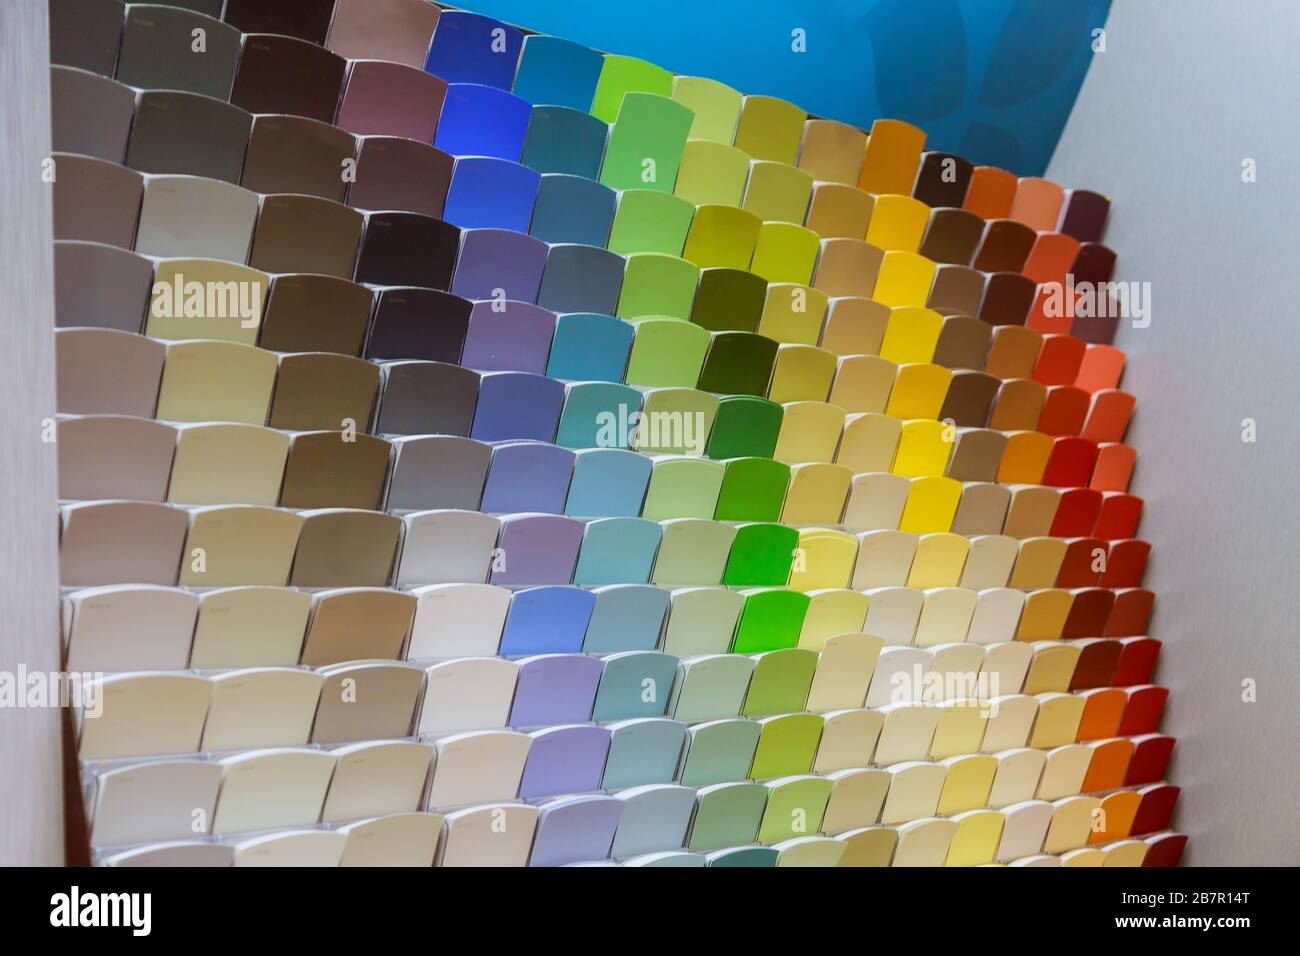 Muestras De Color De Pintura Para Barras De Madera Material De Diseño  Interior En Una Ferretería Foto de archivo - Imagen de concepto, muebles:  214953648